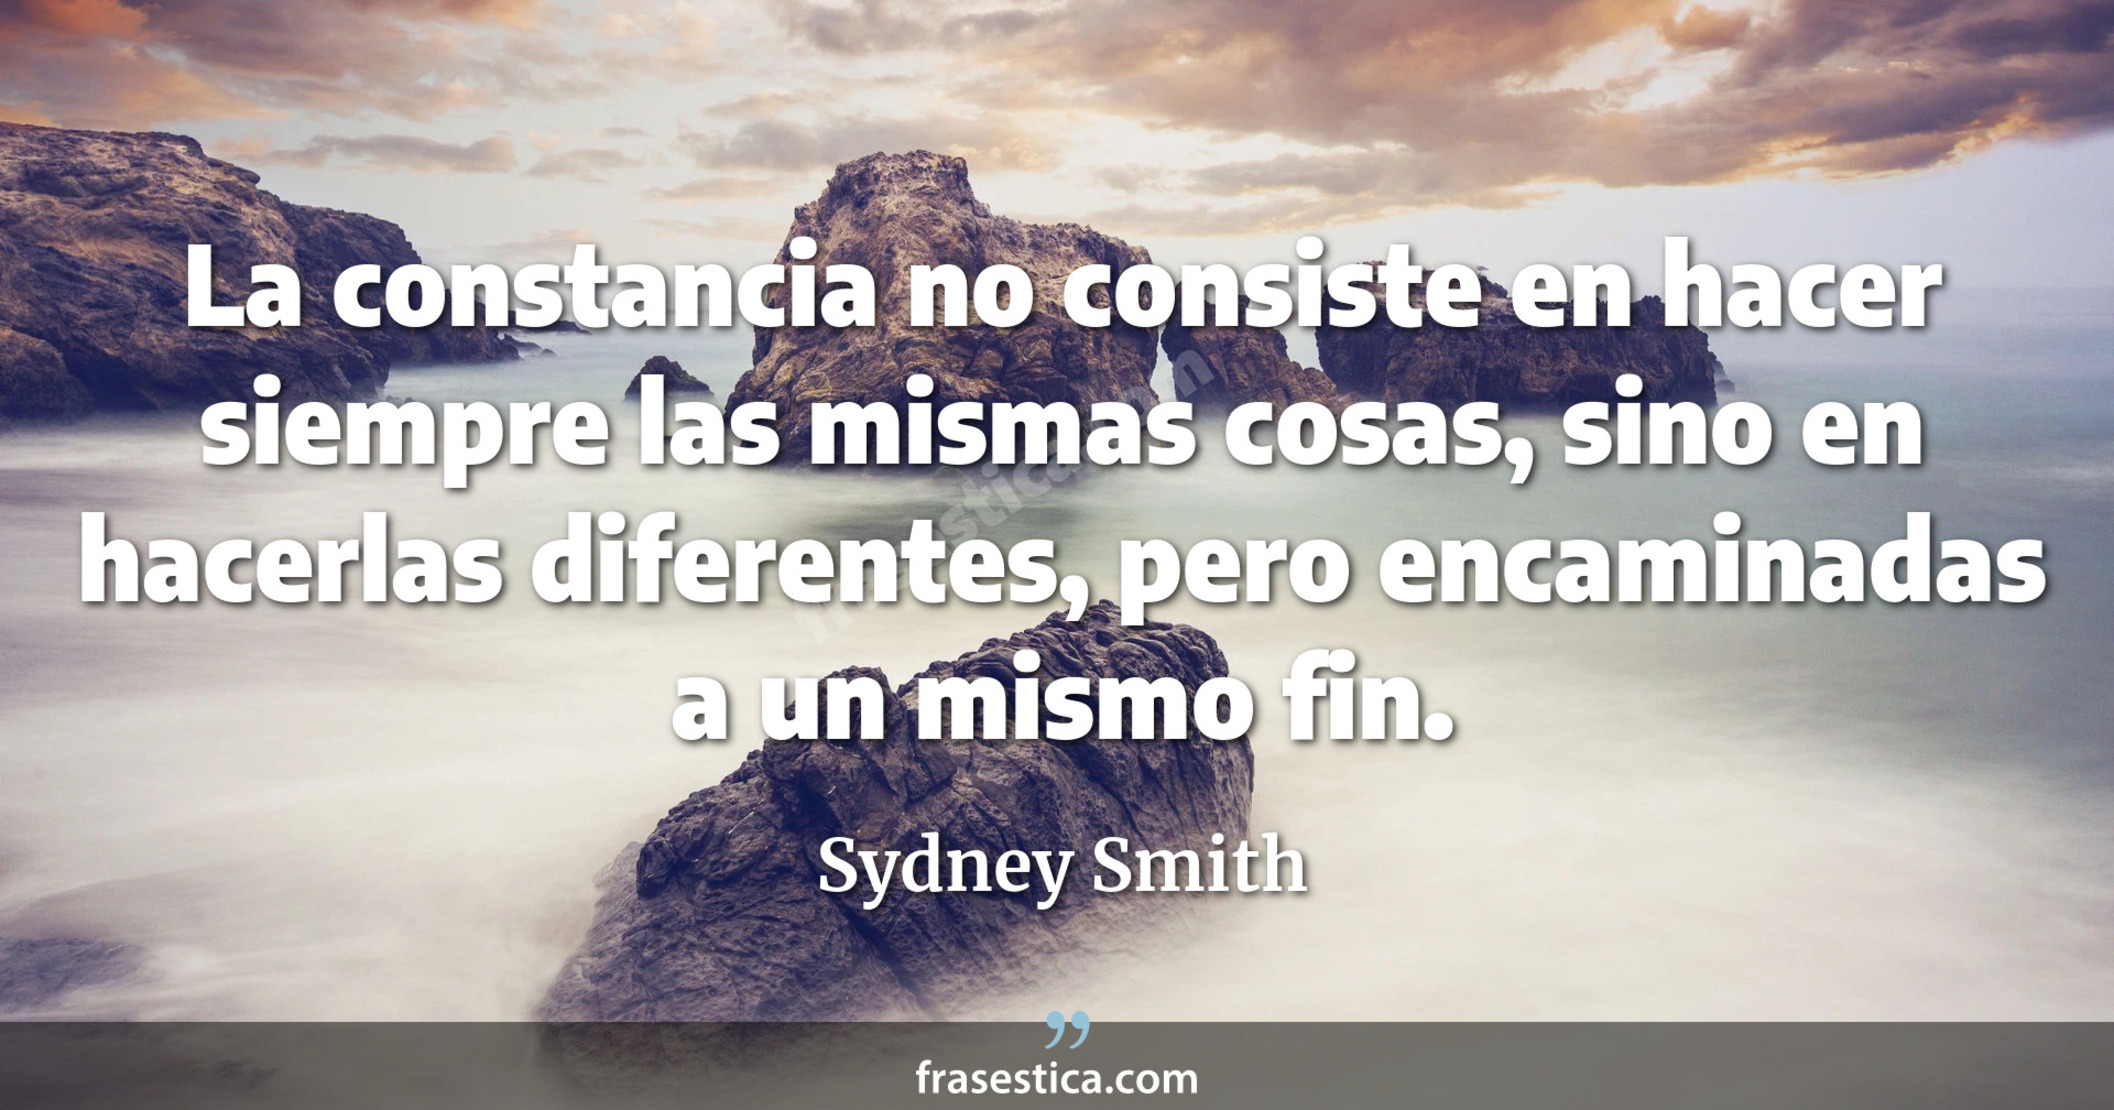 La constancia no consiste en hacer siempre las mismas cosas, sino en hacerlas diferentes, pero encaminadas a un mismo fin. - Sydney Smith